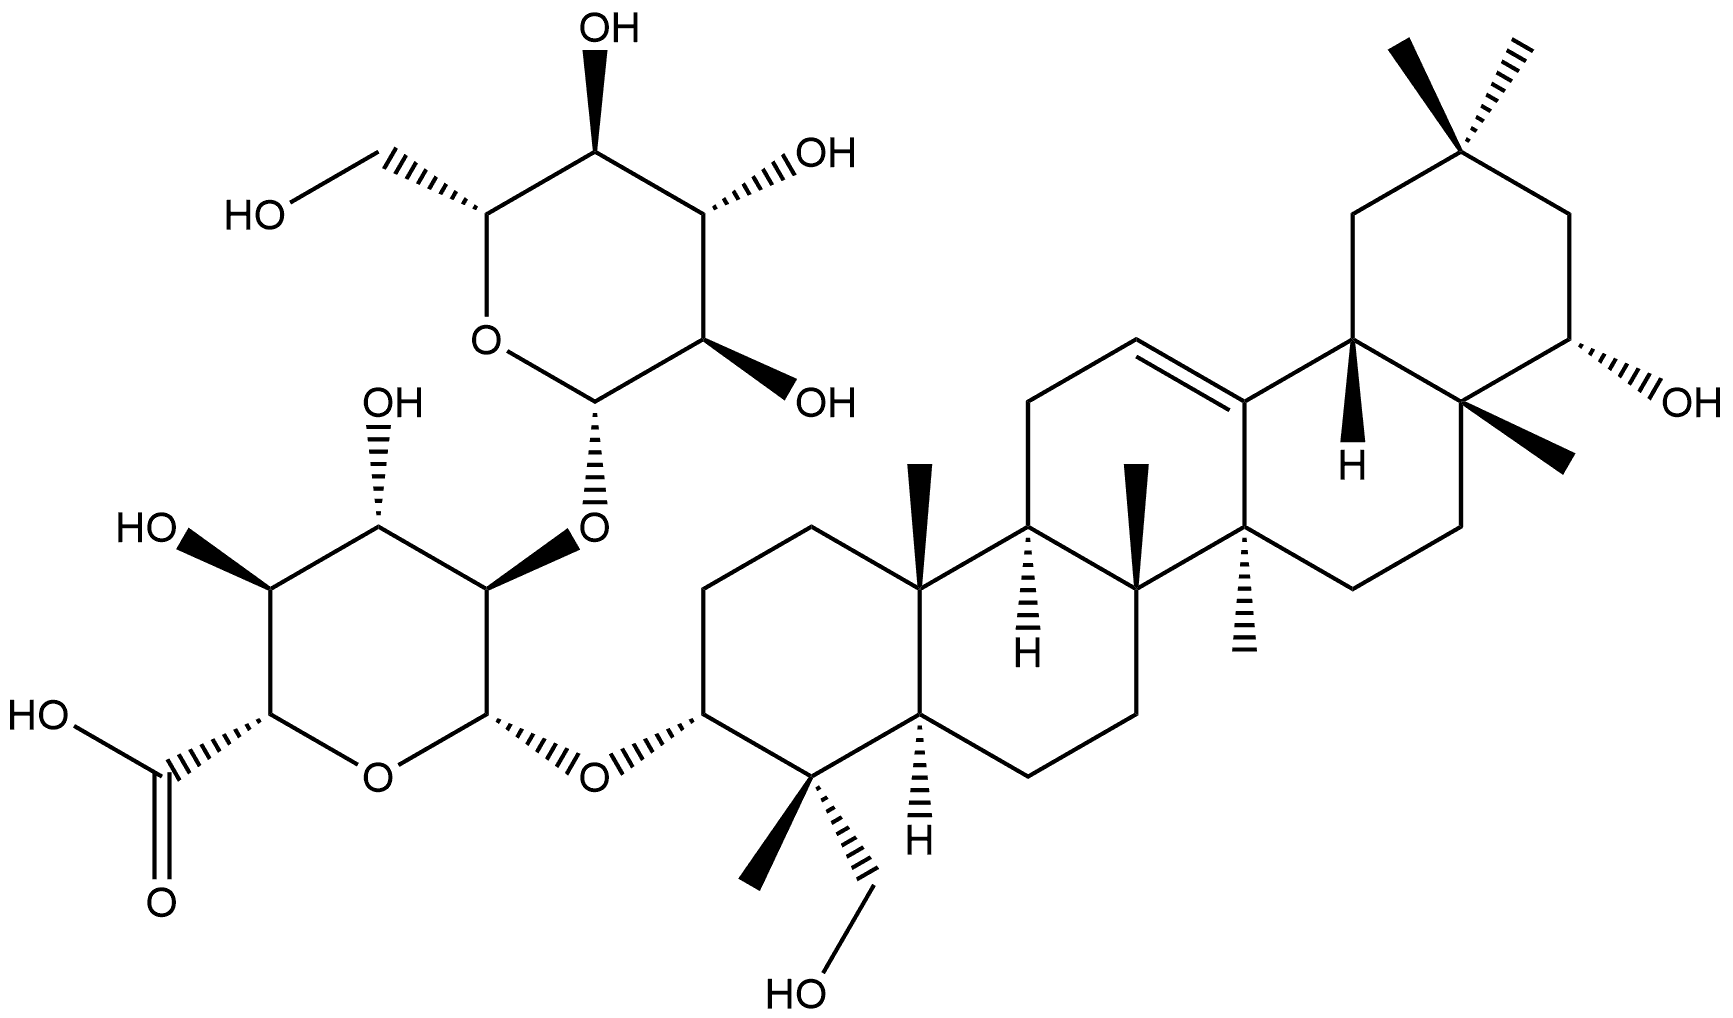 β-D-Glucopyranosiduronic acid, (3β,4β,22β)-22,23-dihydroxyolean-12-en-3-yl 2-O-β-D-glucopyranosyl- Structure